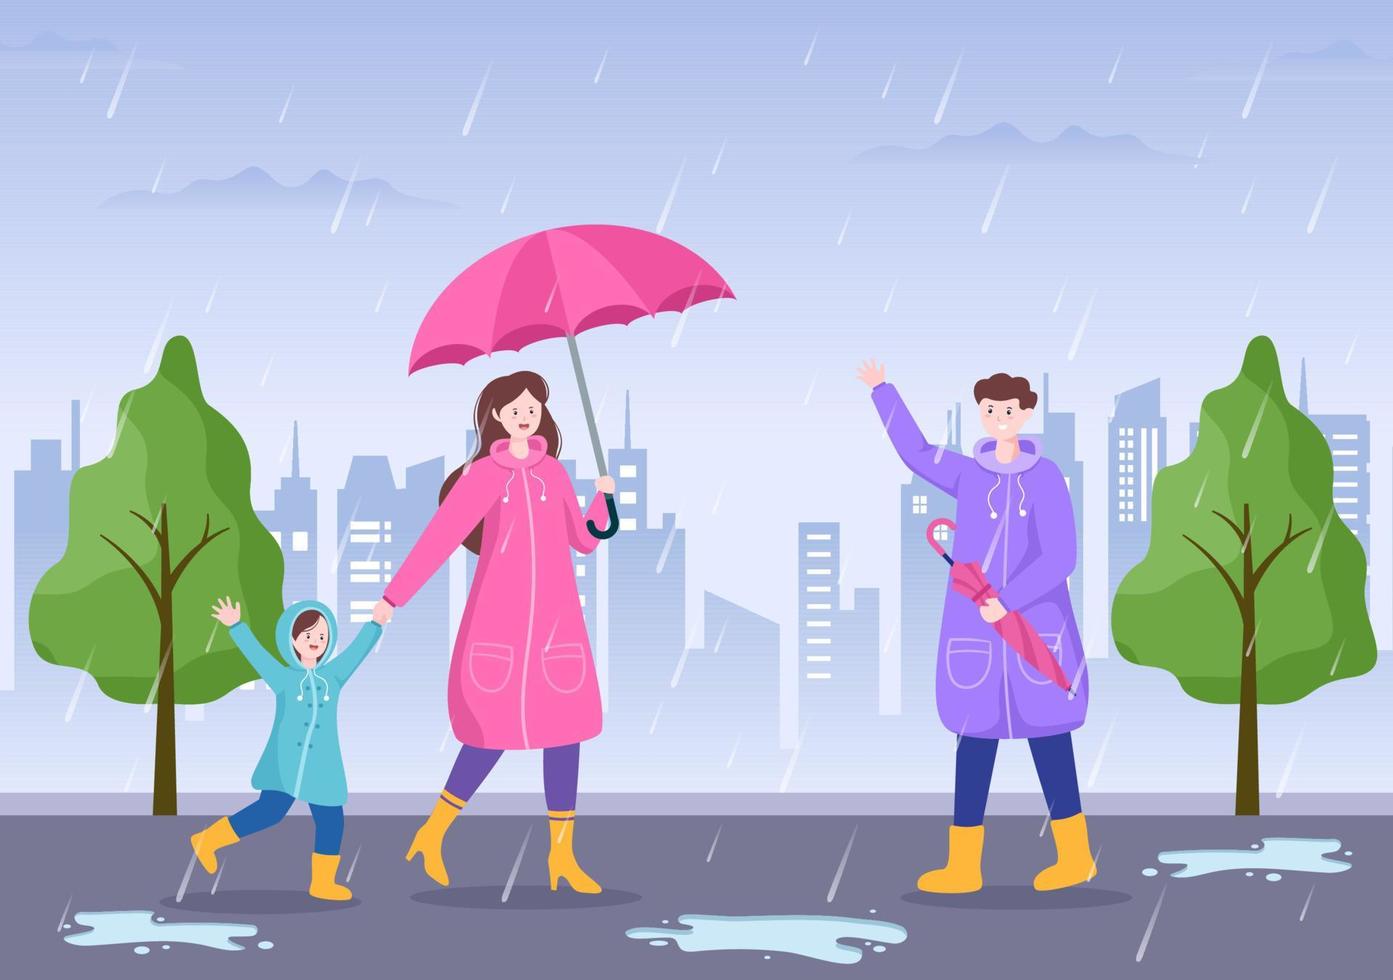 människor som bär regnrock, gummistövlar och bär paraply mitt i regnskurar stormar. platt bakgrund tecknad vektorillustration för banner eller affisch vektor